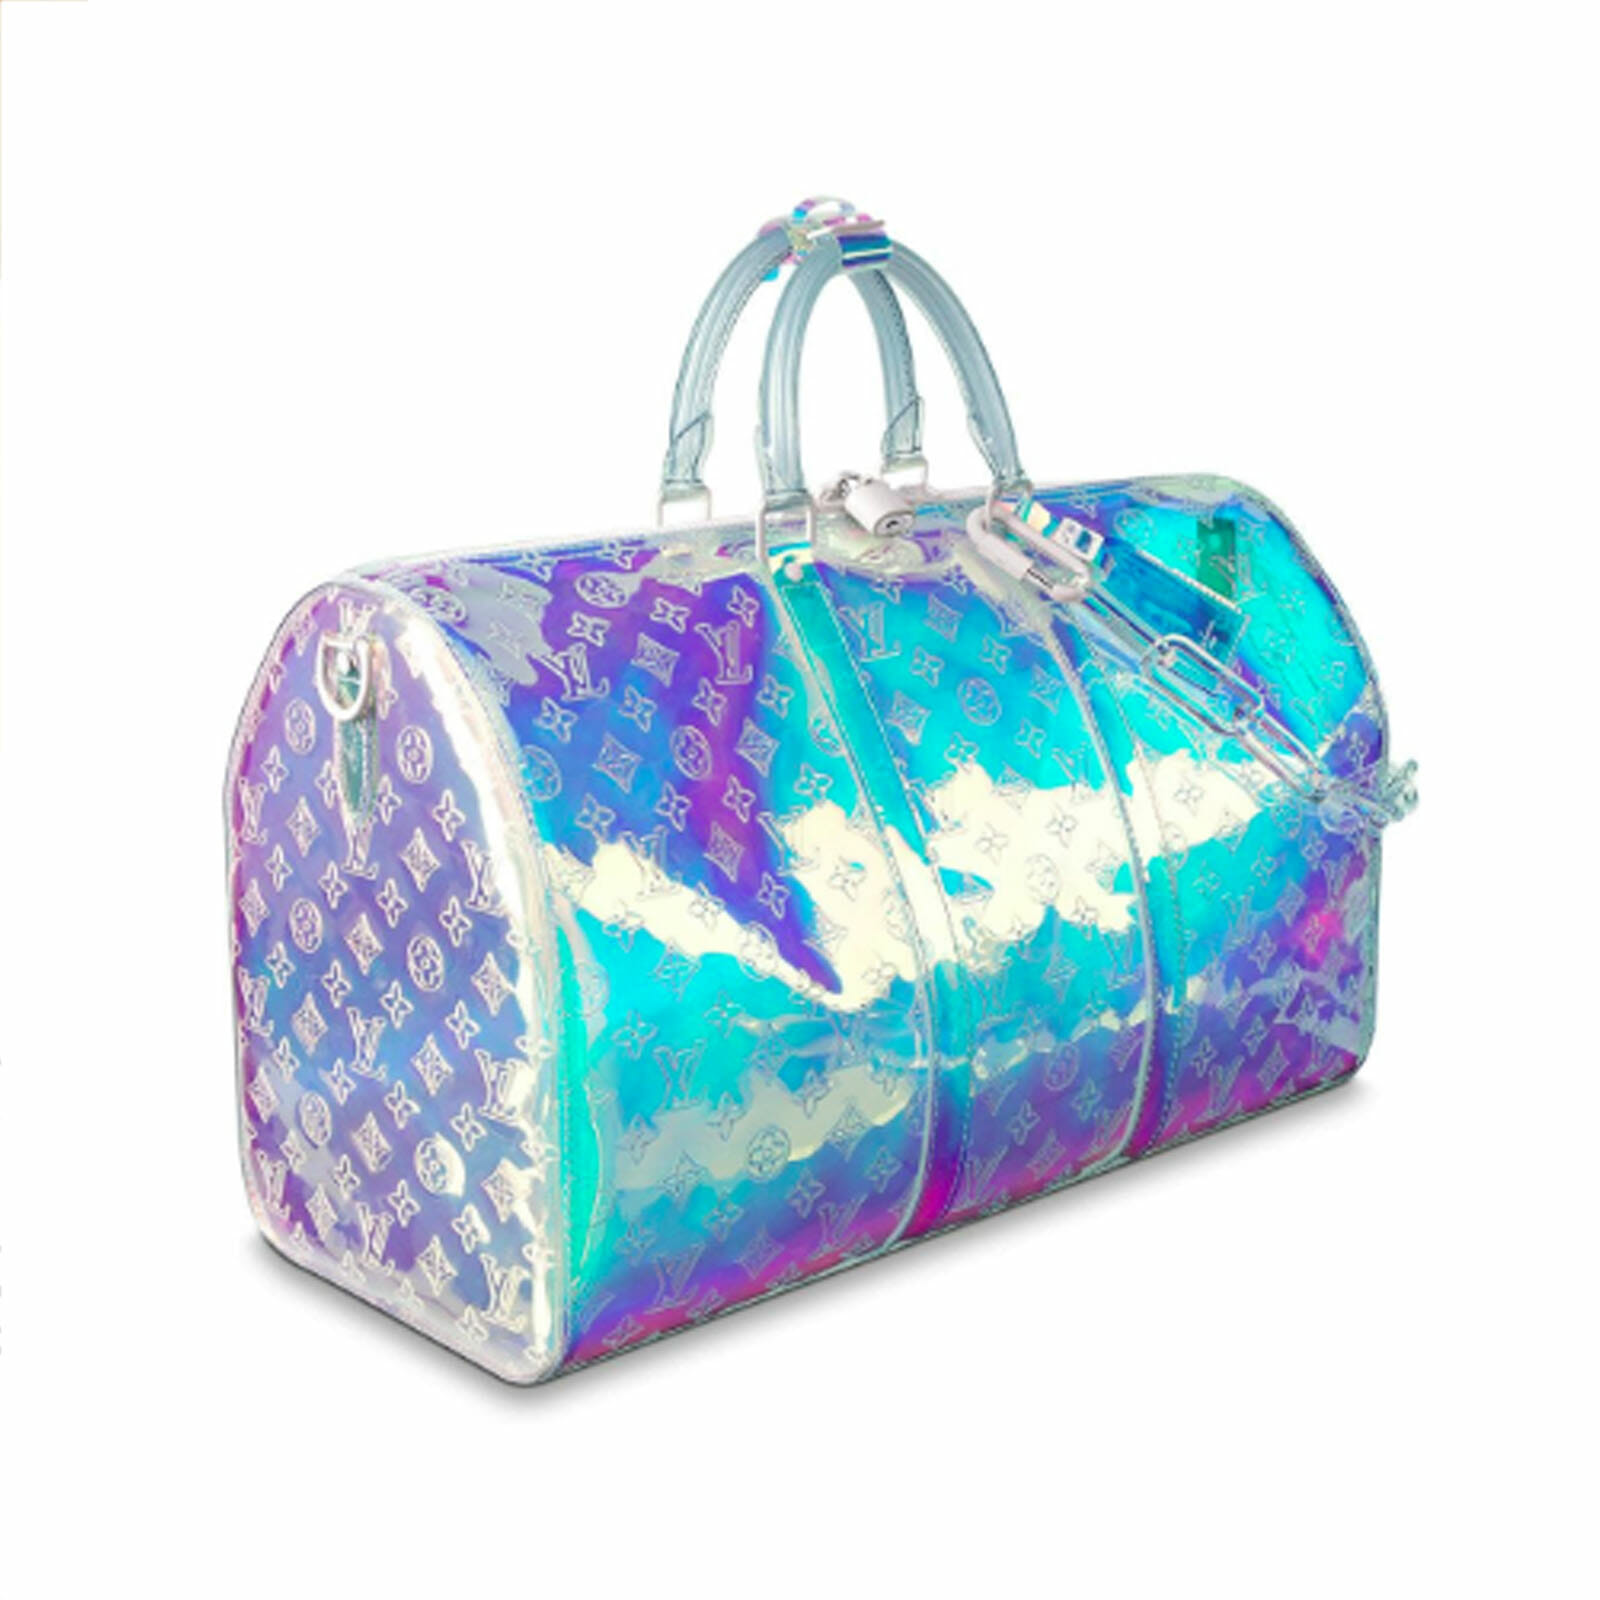 Lv Prism Duffle Bag & Lv Prism Belt : Dhgate